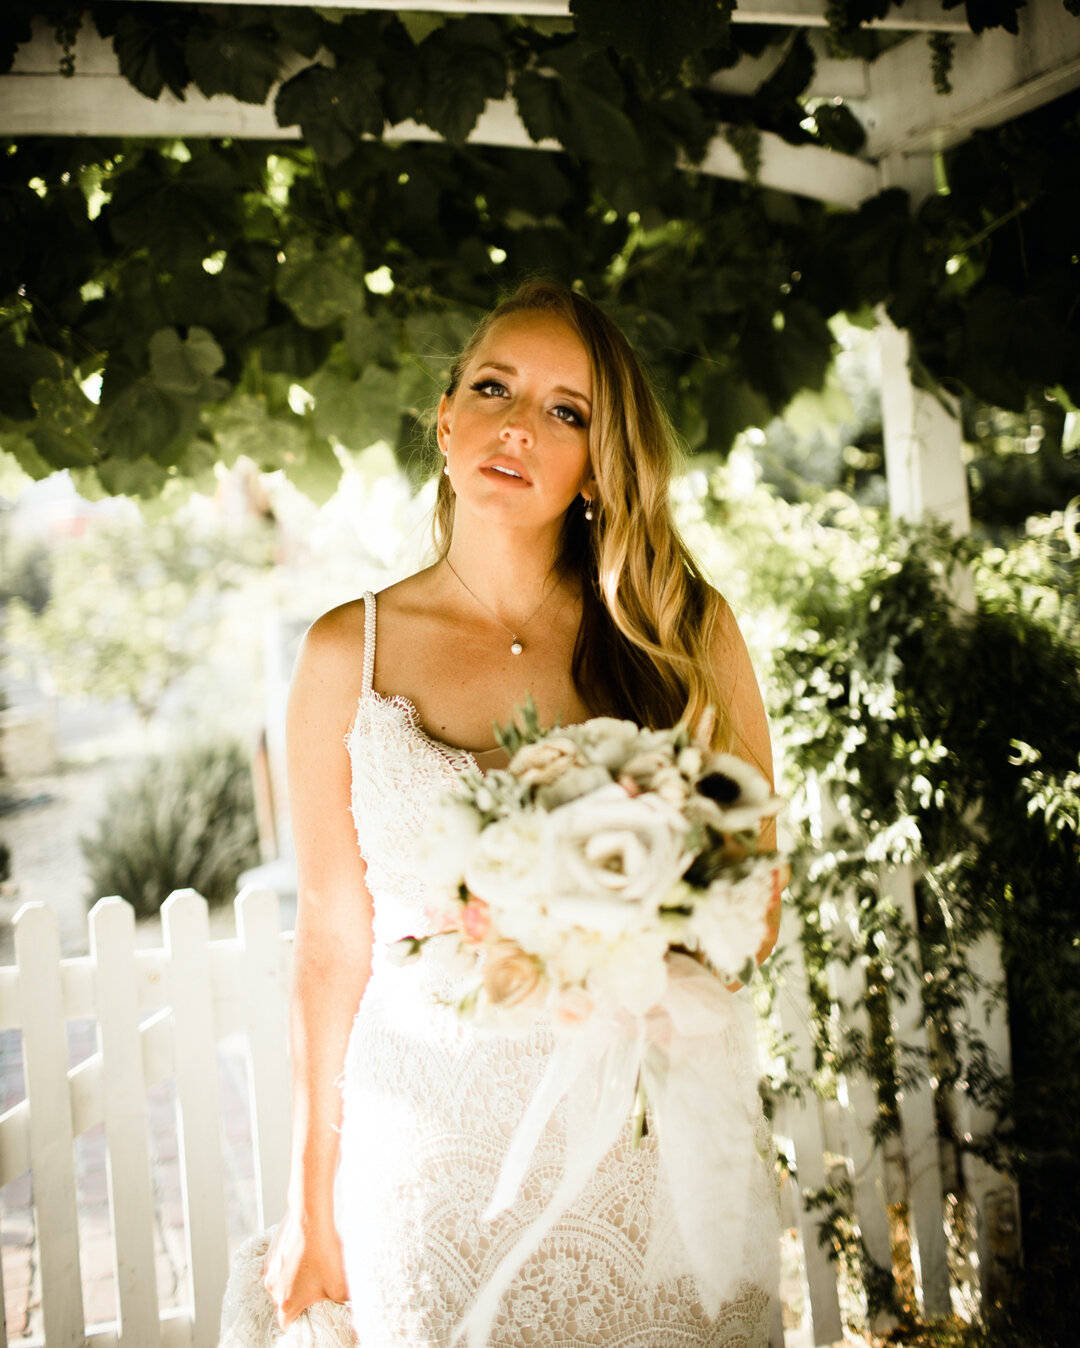 Claire in the garden ​​​​​​​​
.​​​​​​​​
.​​​​​​​​
.​​​​​​​​
. ​​​​​​​​
#wedding #weddingphotography #lookslikefilmweddings #theknot #thelane #bohemianbride #junebugweddings #loveandwildhearts #belovedstories #heywildweddings #greenweddingshoes #radlo